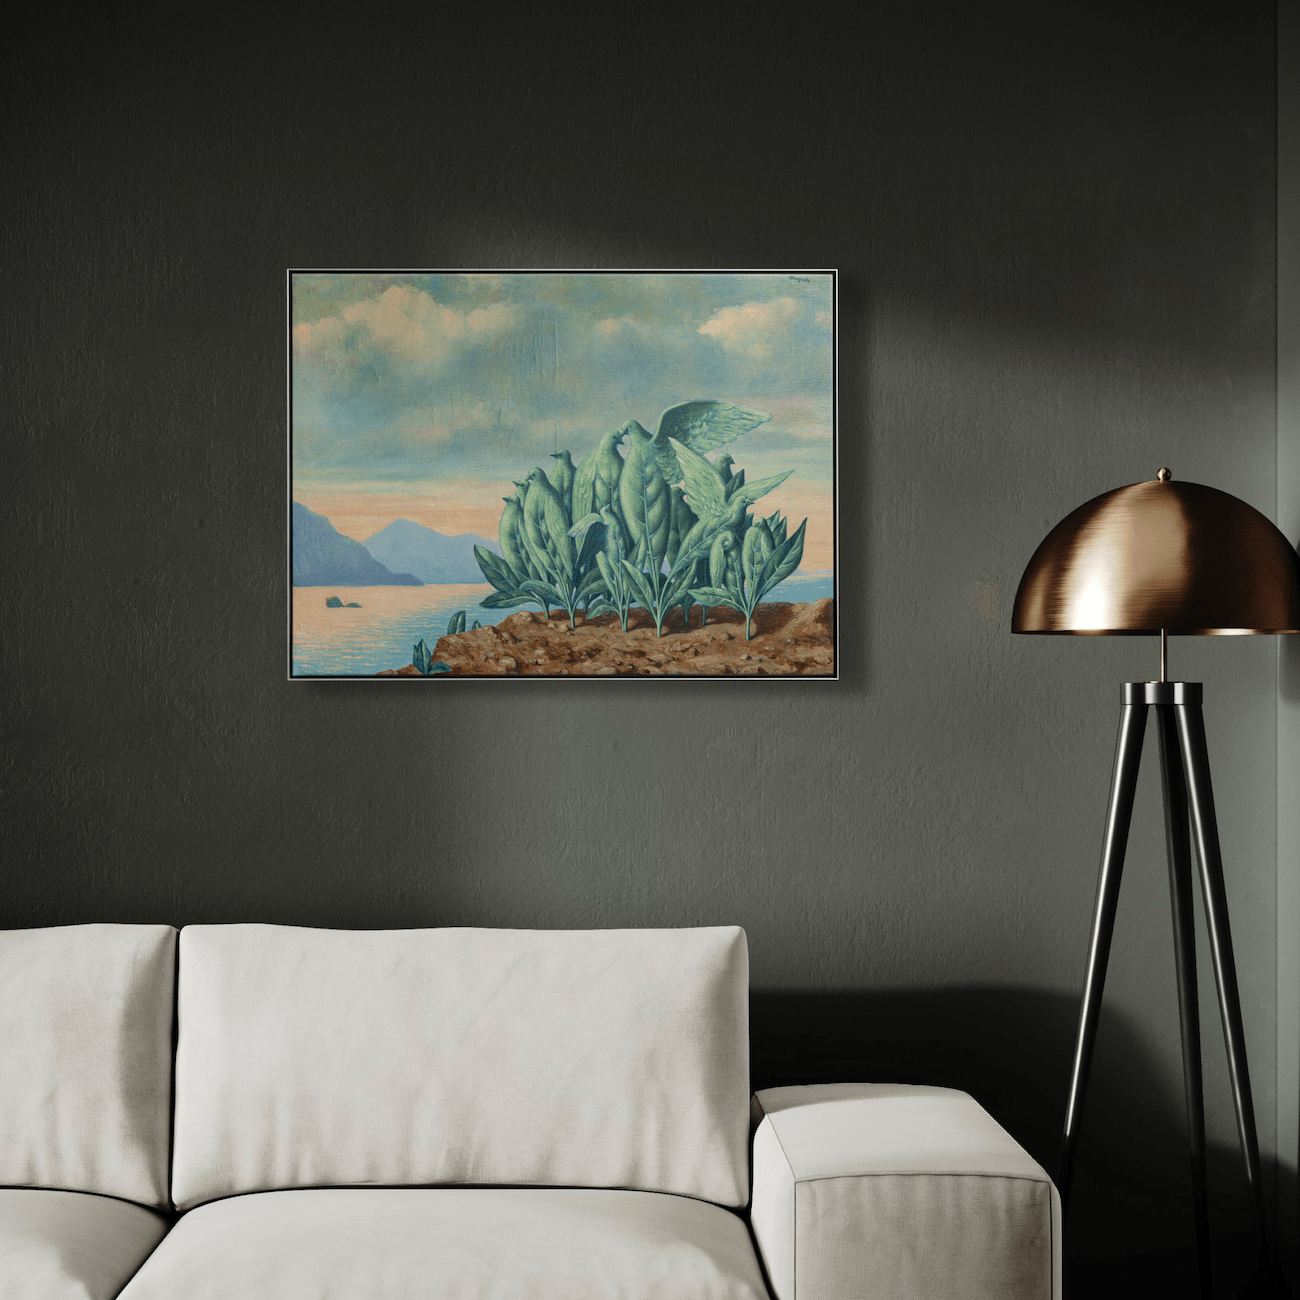 René Magritte - L'Ile au Trésor, 1942 - On Paper